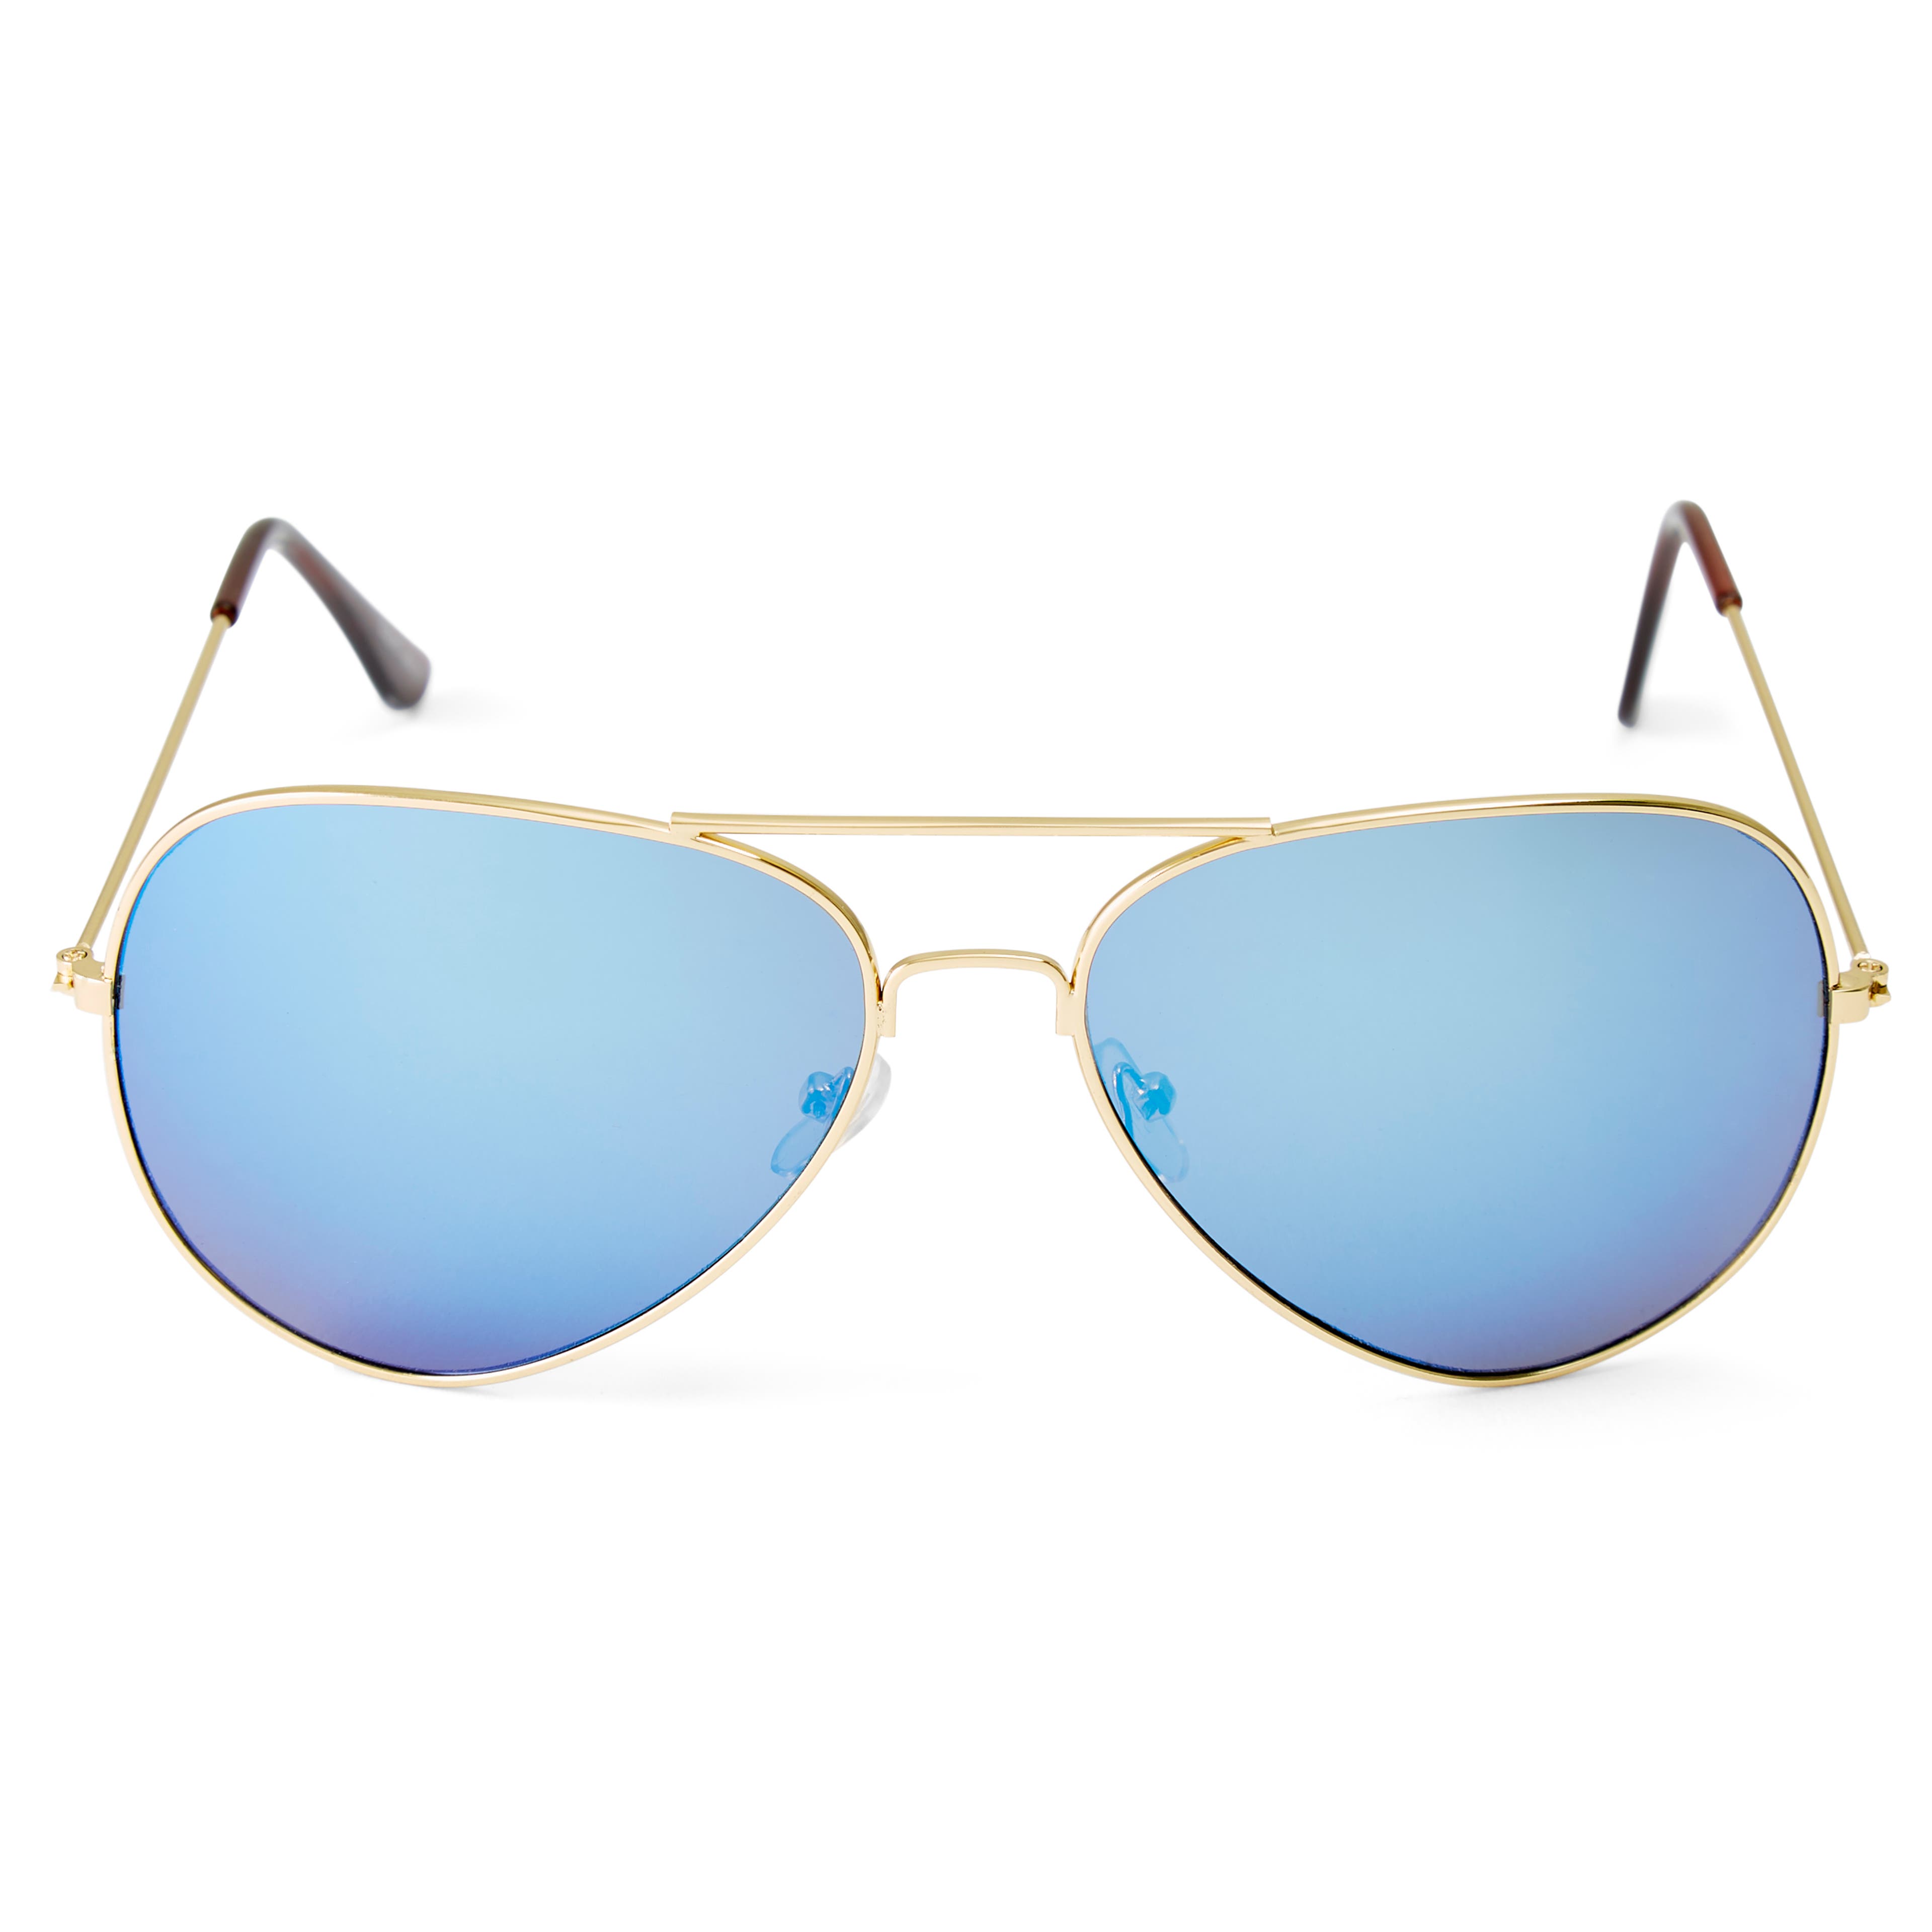 Sluneční brýle Aviator ve zlatých a modrých tónech